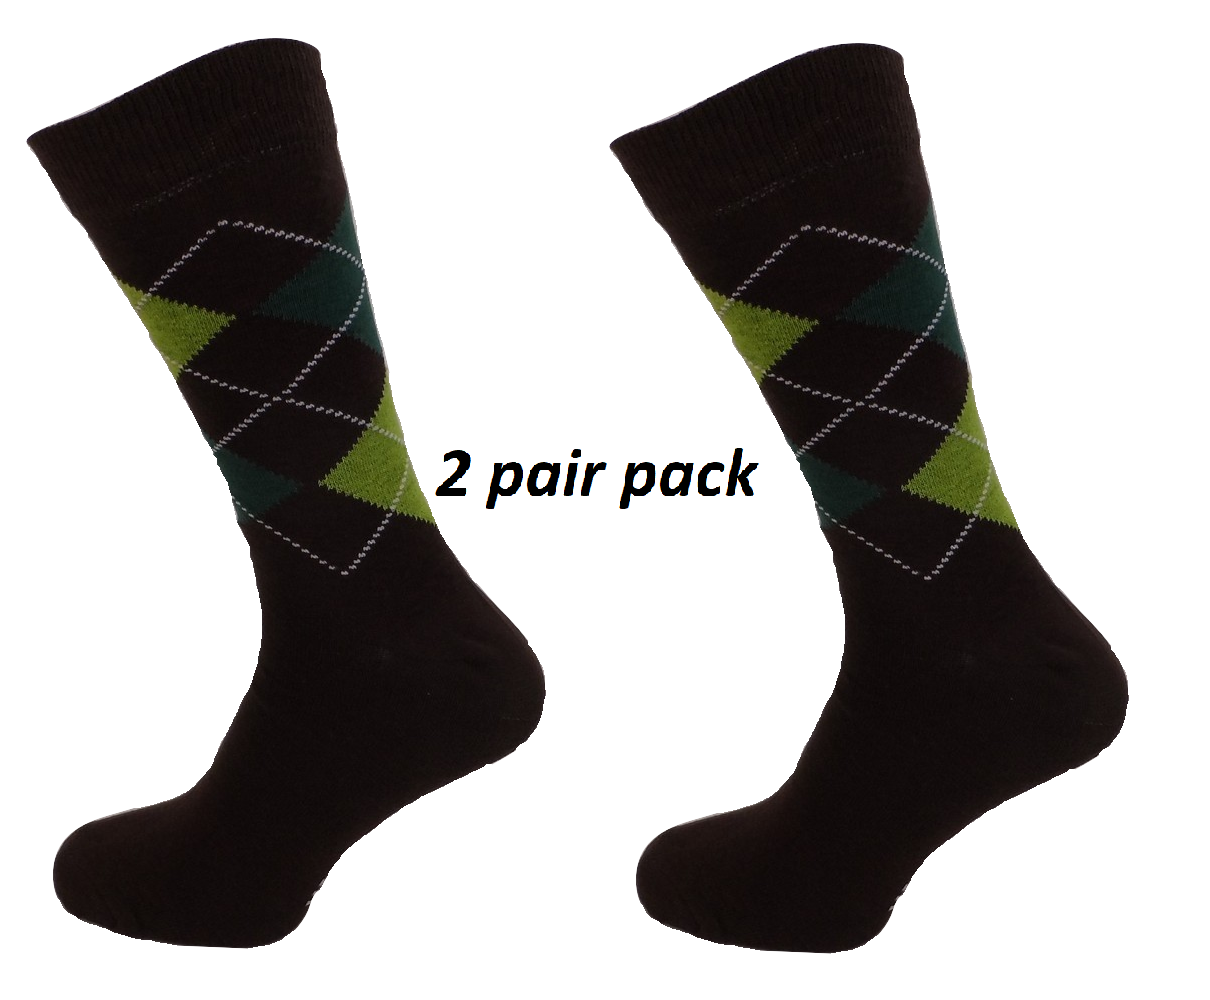 Mens 2 Pair Pack of Brown Argyle Patterned Socks